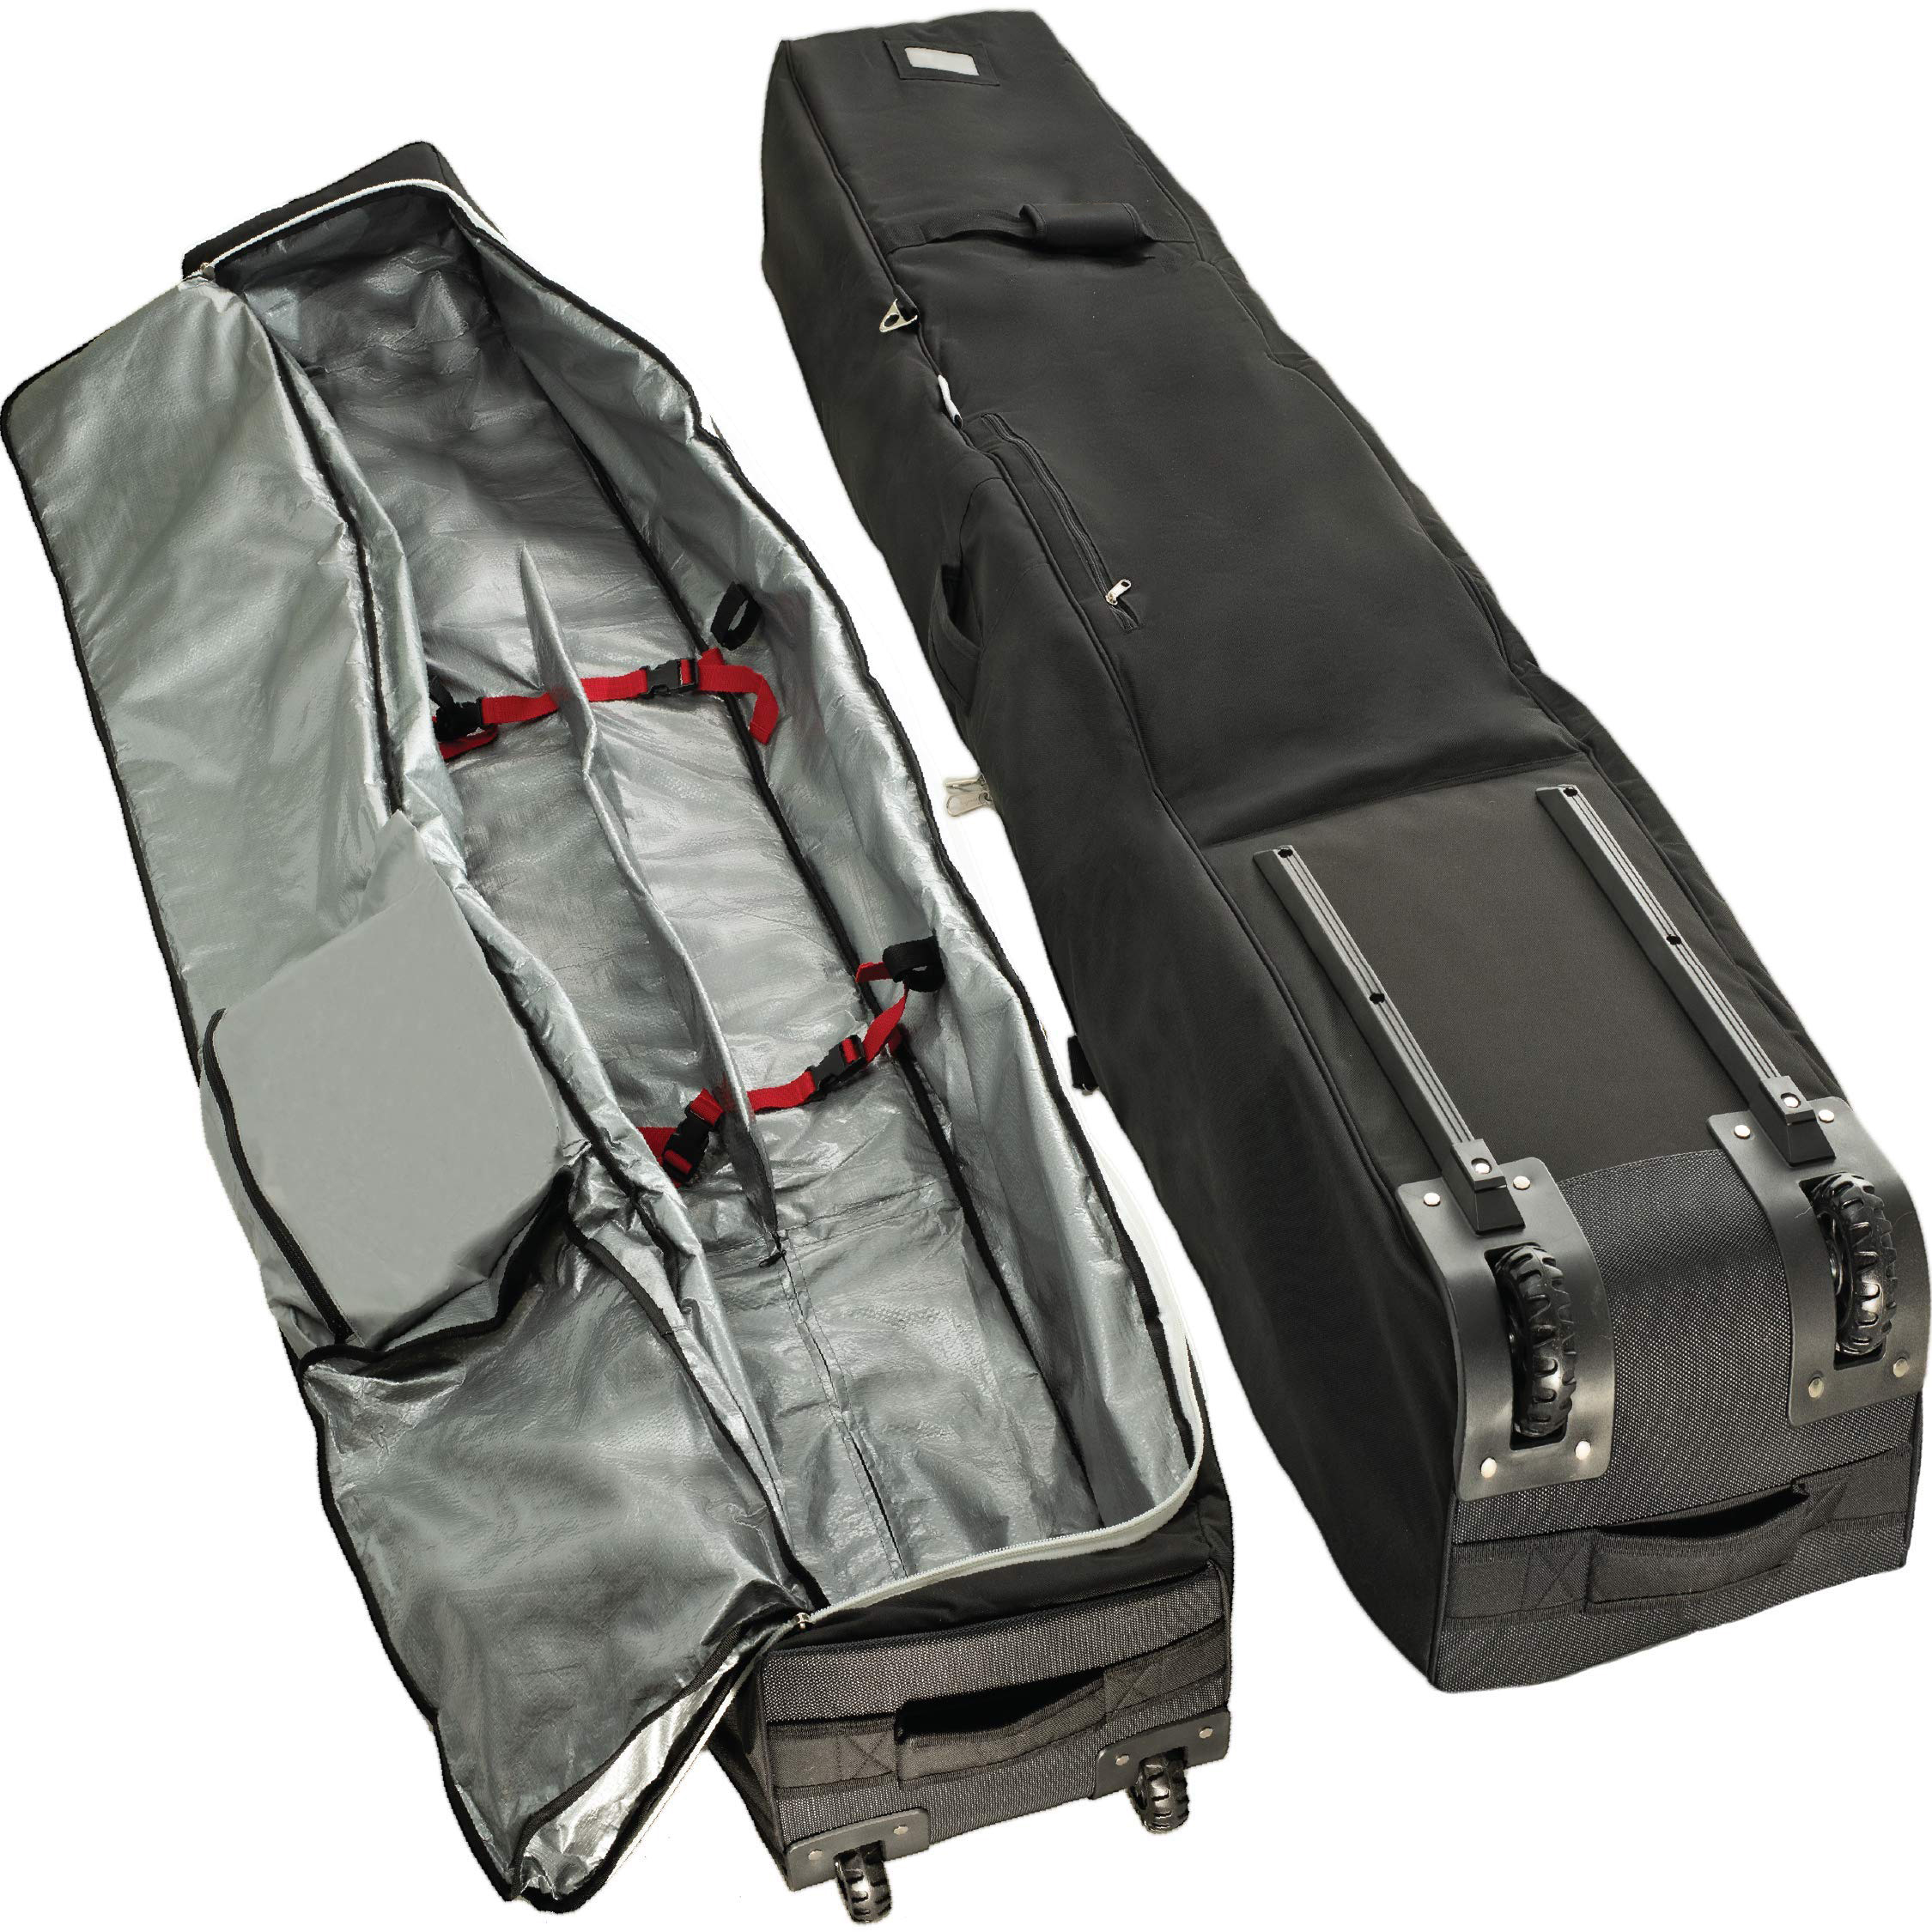 Convient pour le sac de ski roulant à poulie de voyage et le sac de ski doublé doux peut être personnalisé.